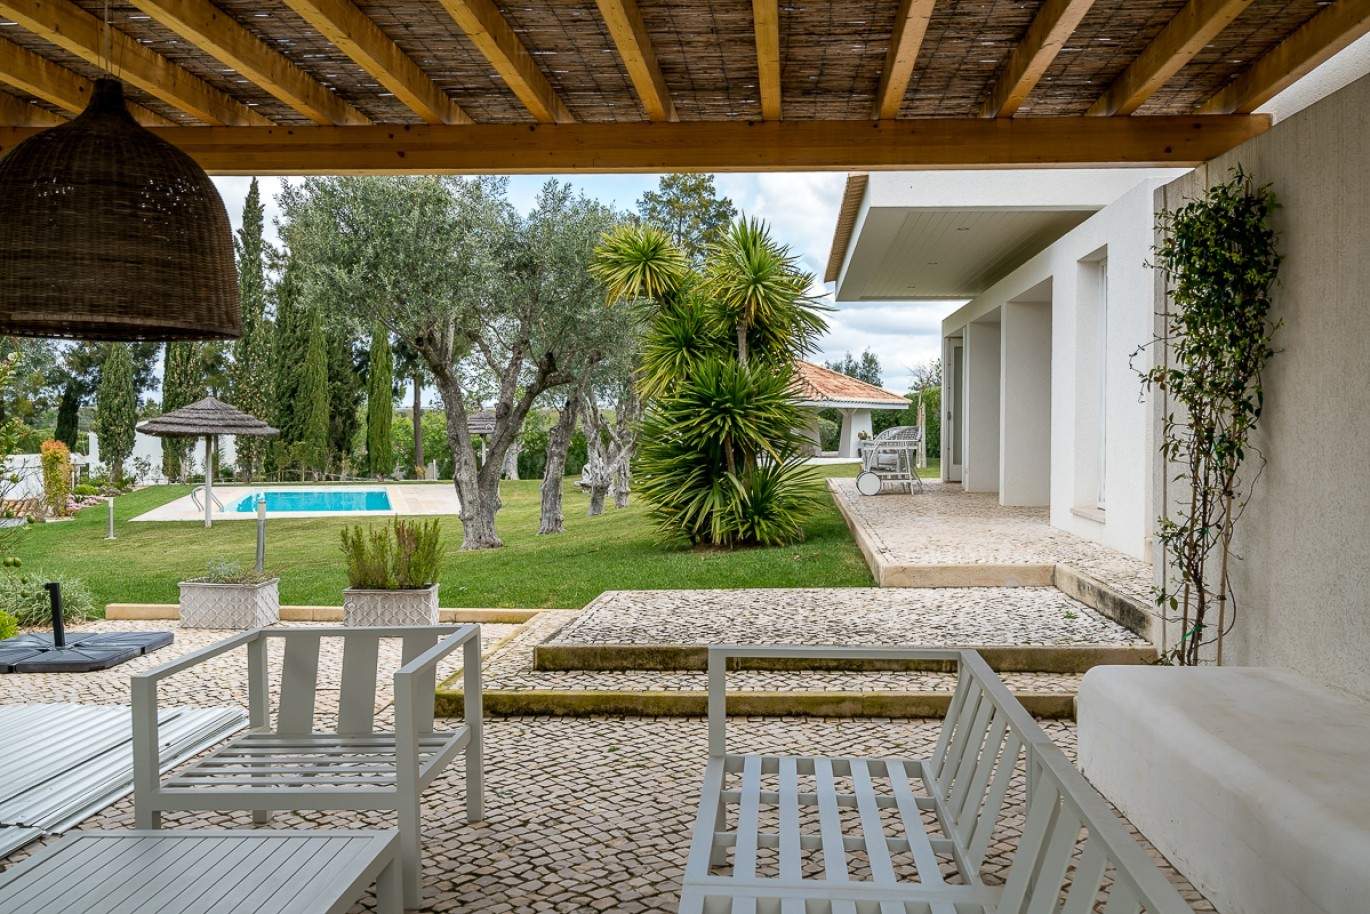 Venda de moradia de alto padrão com piscina, Silves, Algarve, Portugal_77340